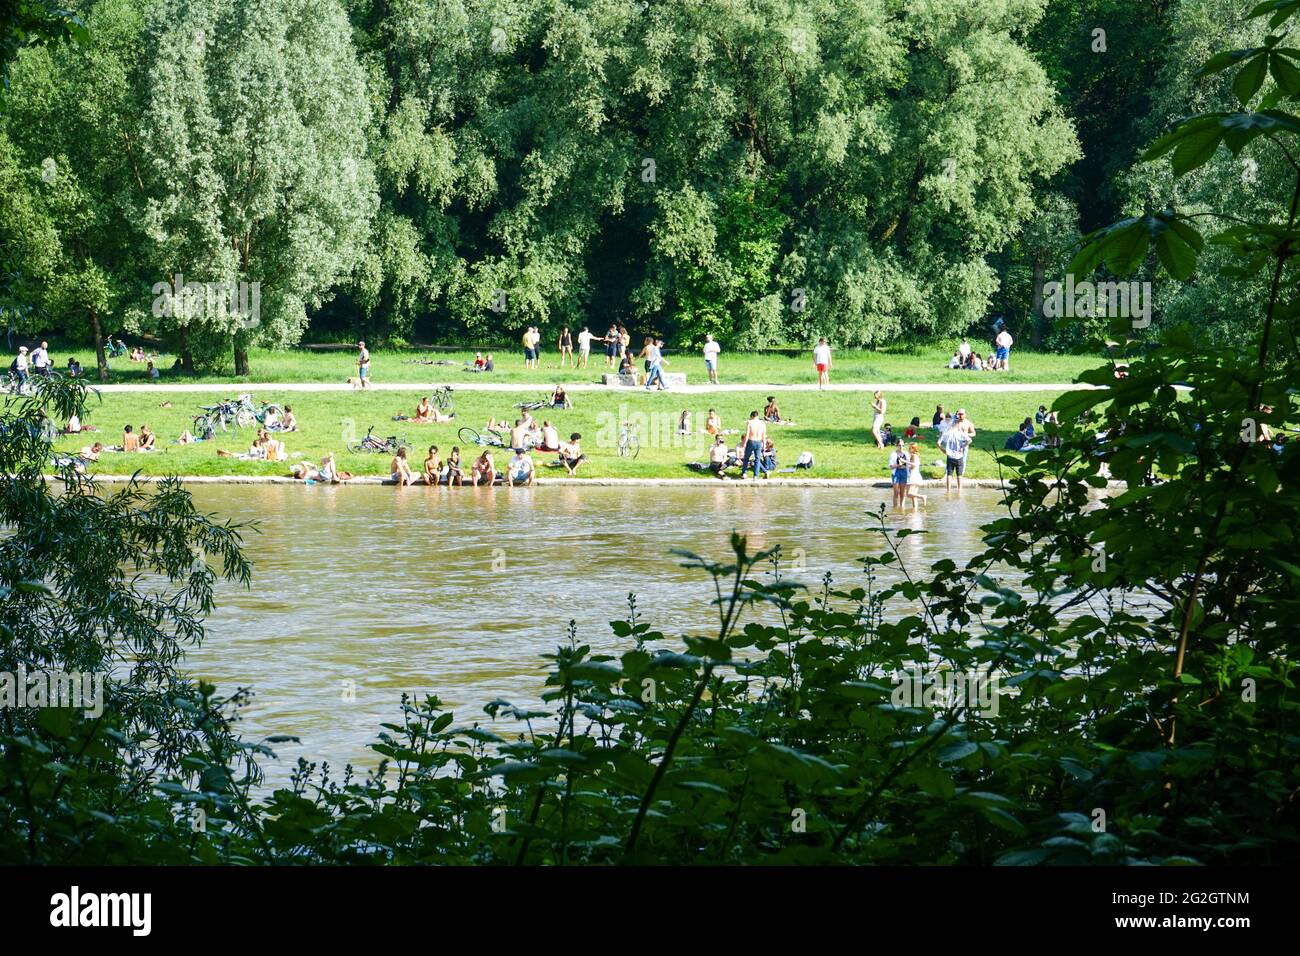 Nach den strengen Corona-Beschränkungen genießen die Menschen das Leben an einem warmen Sommertag am Ufer der Isar in München. Stockfoto